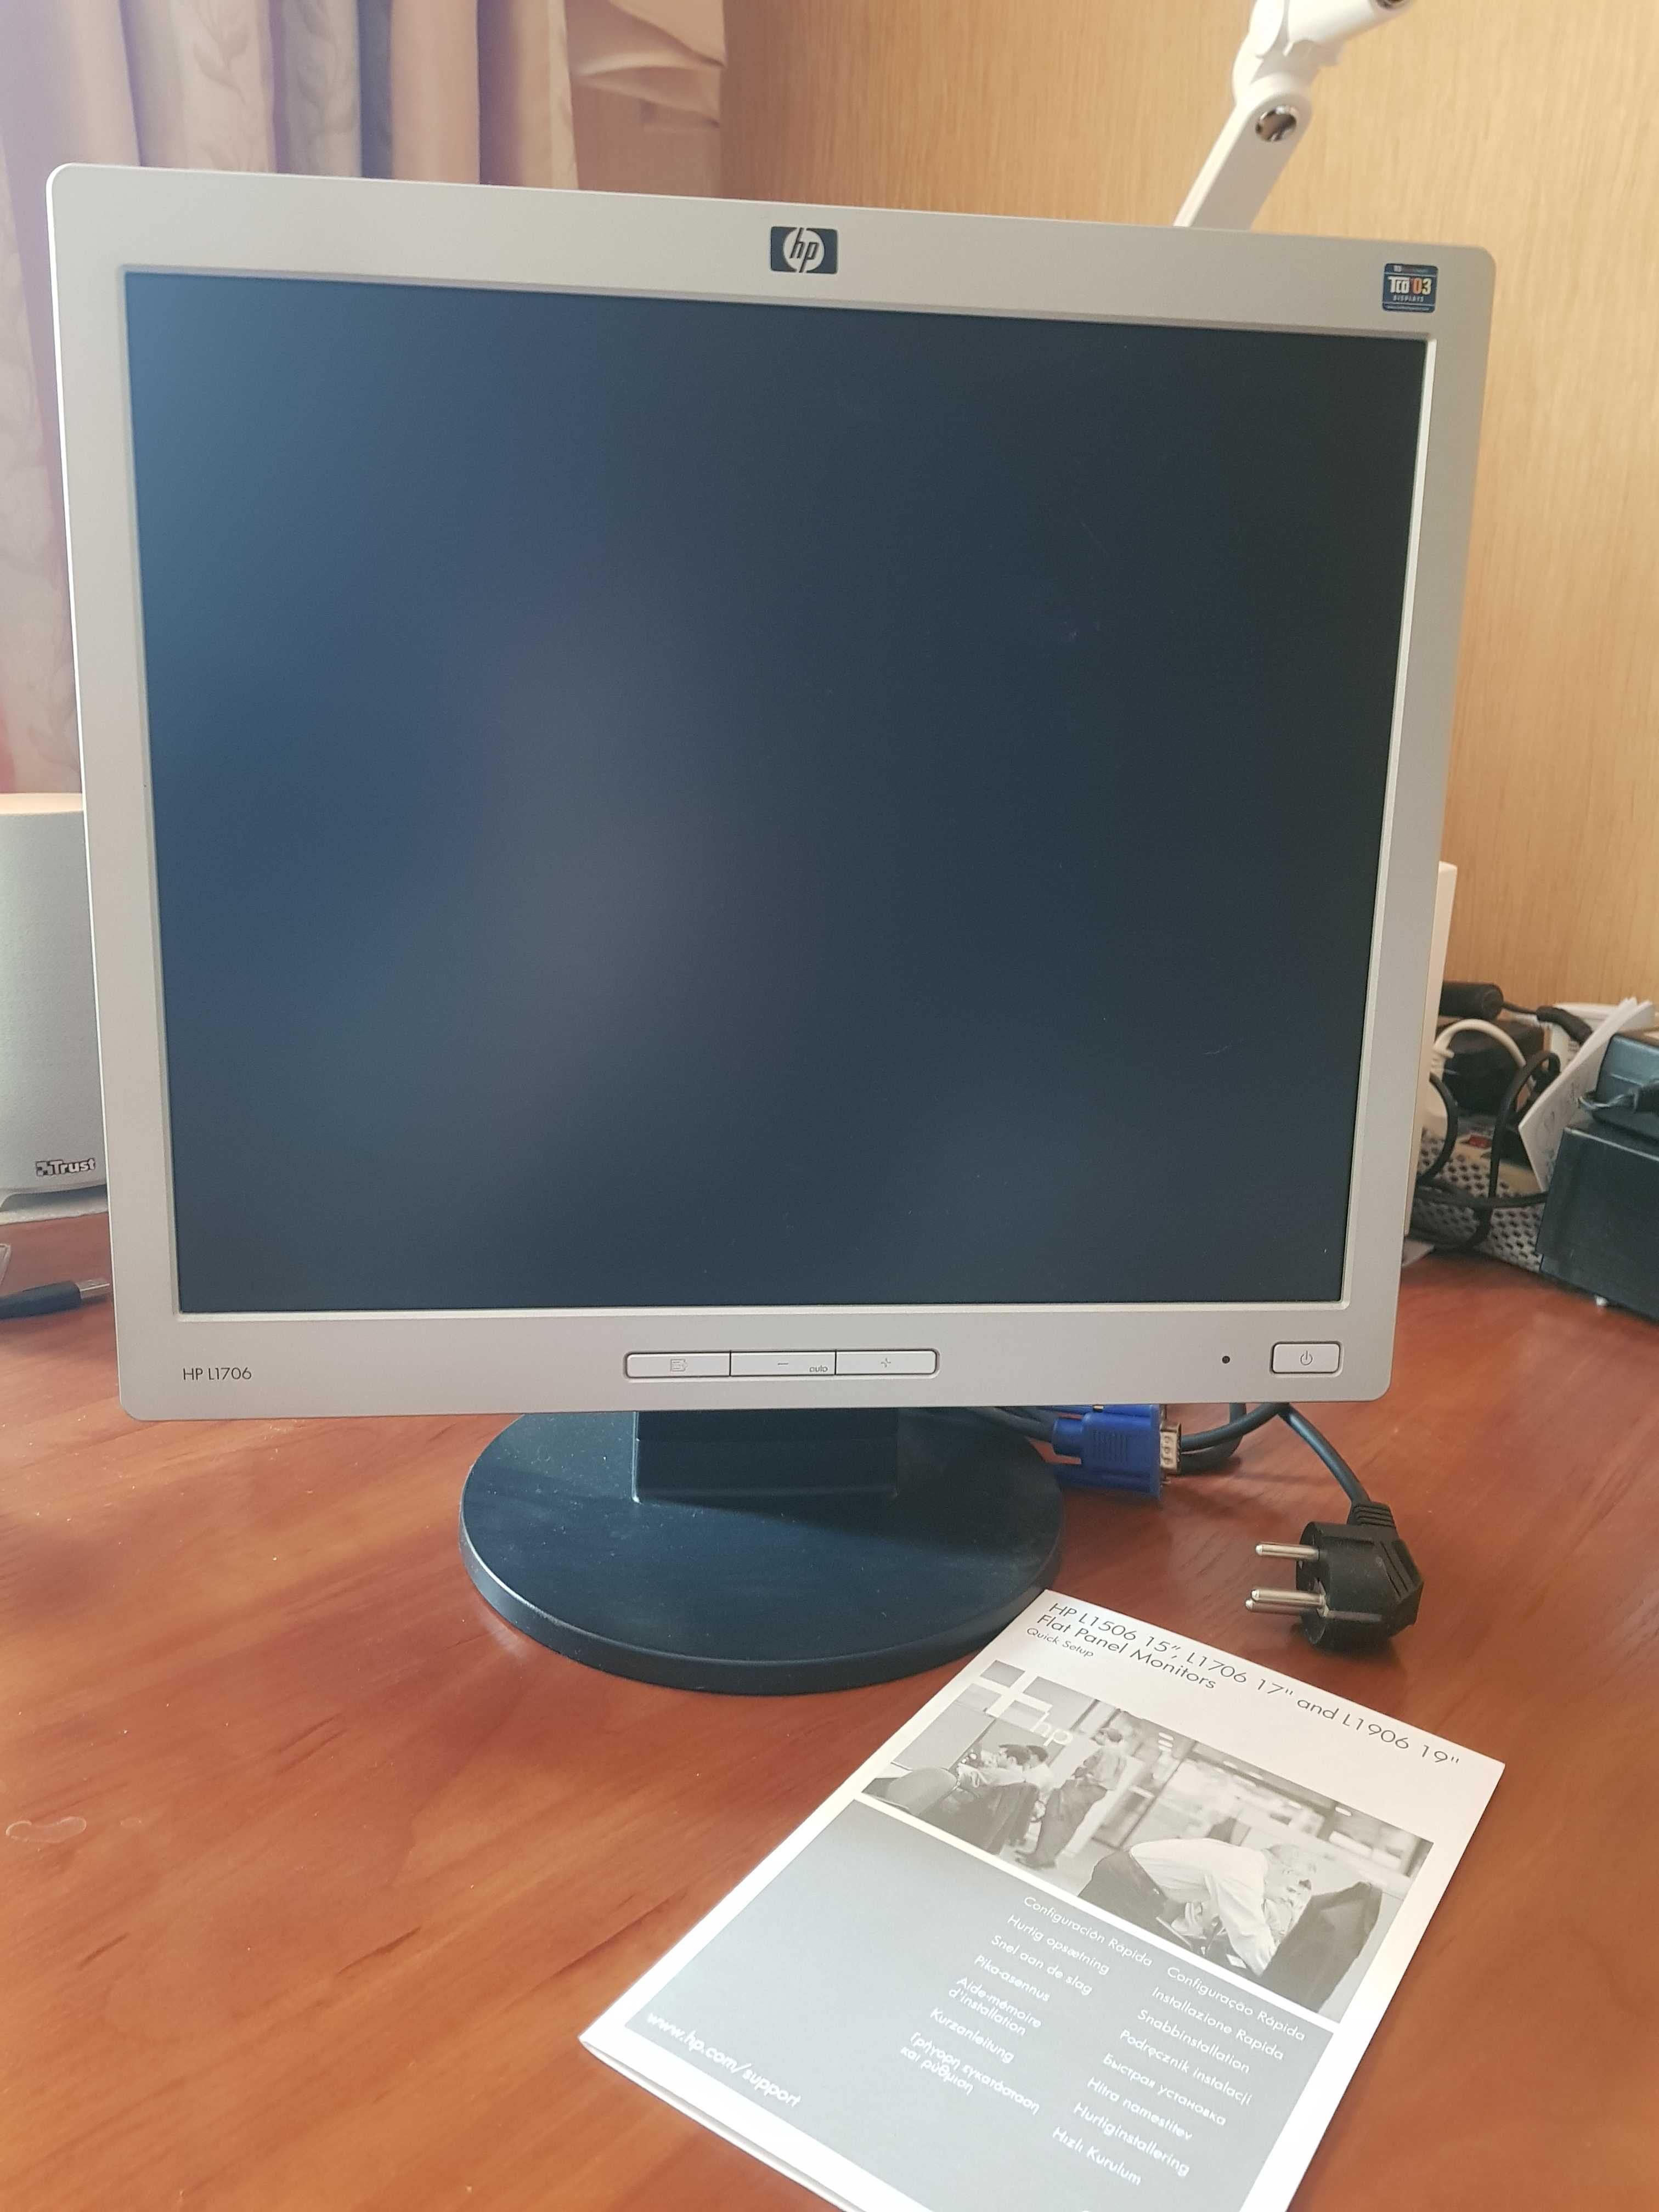 Монитор hp L1706 17" flat panel monitor